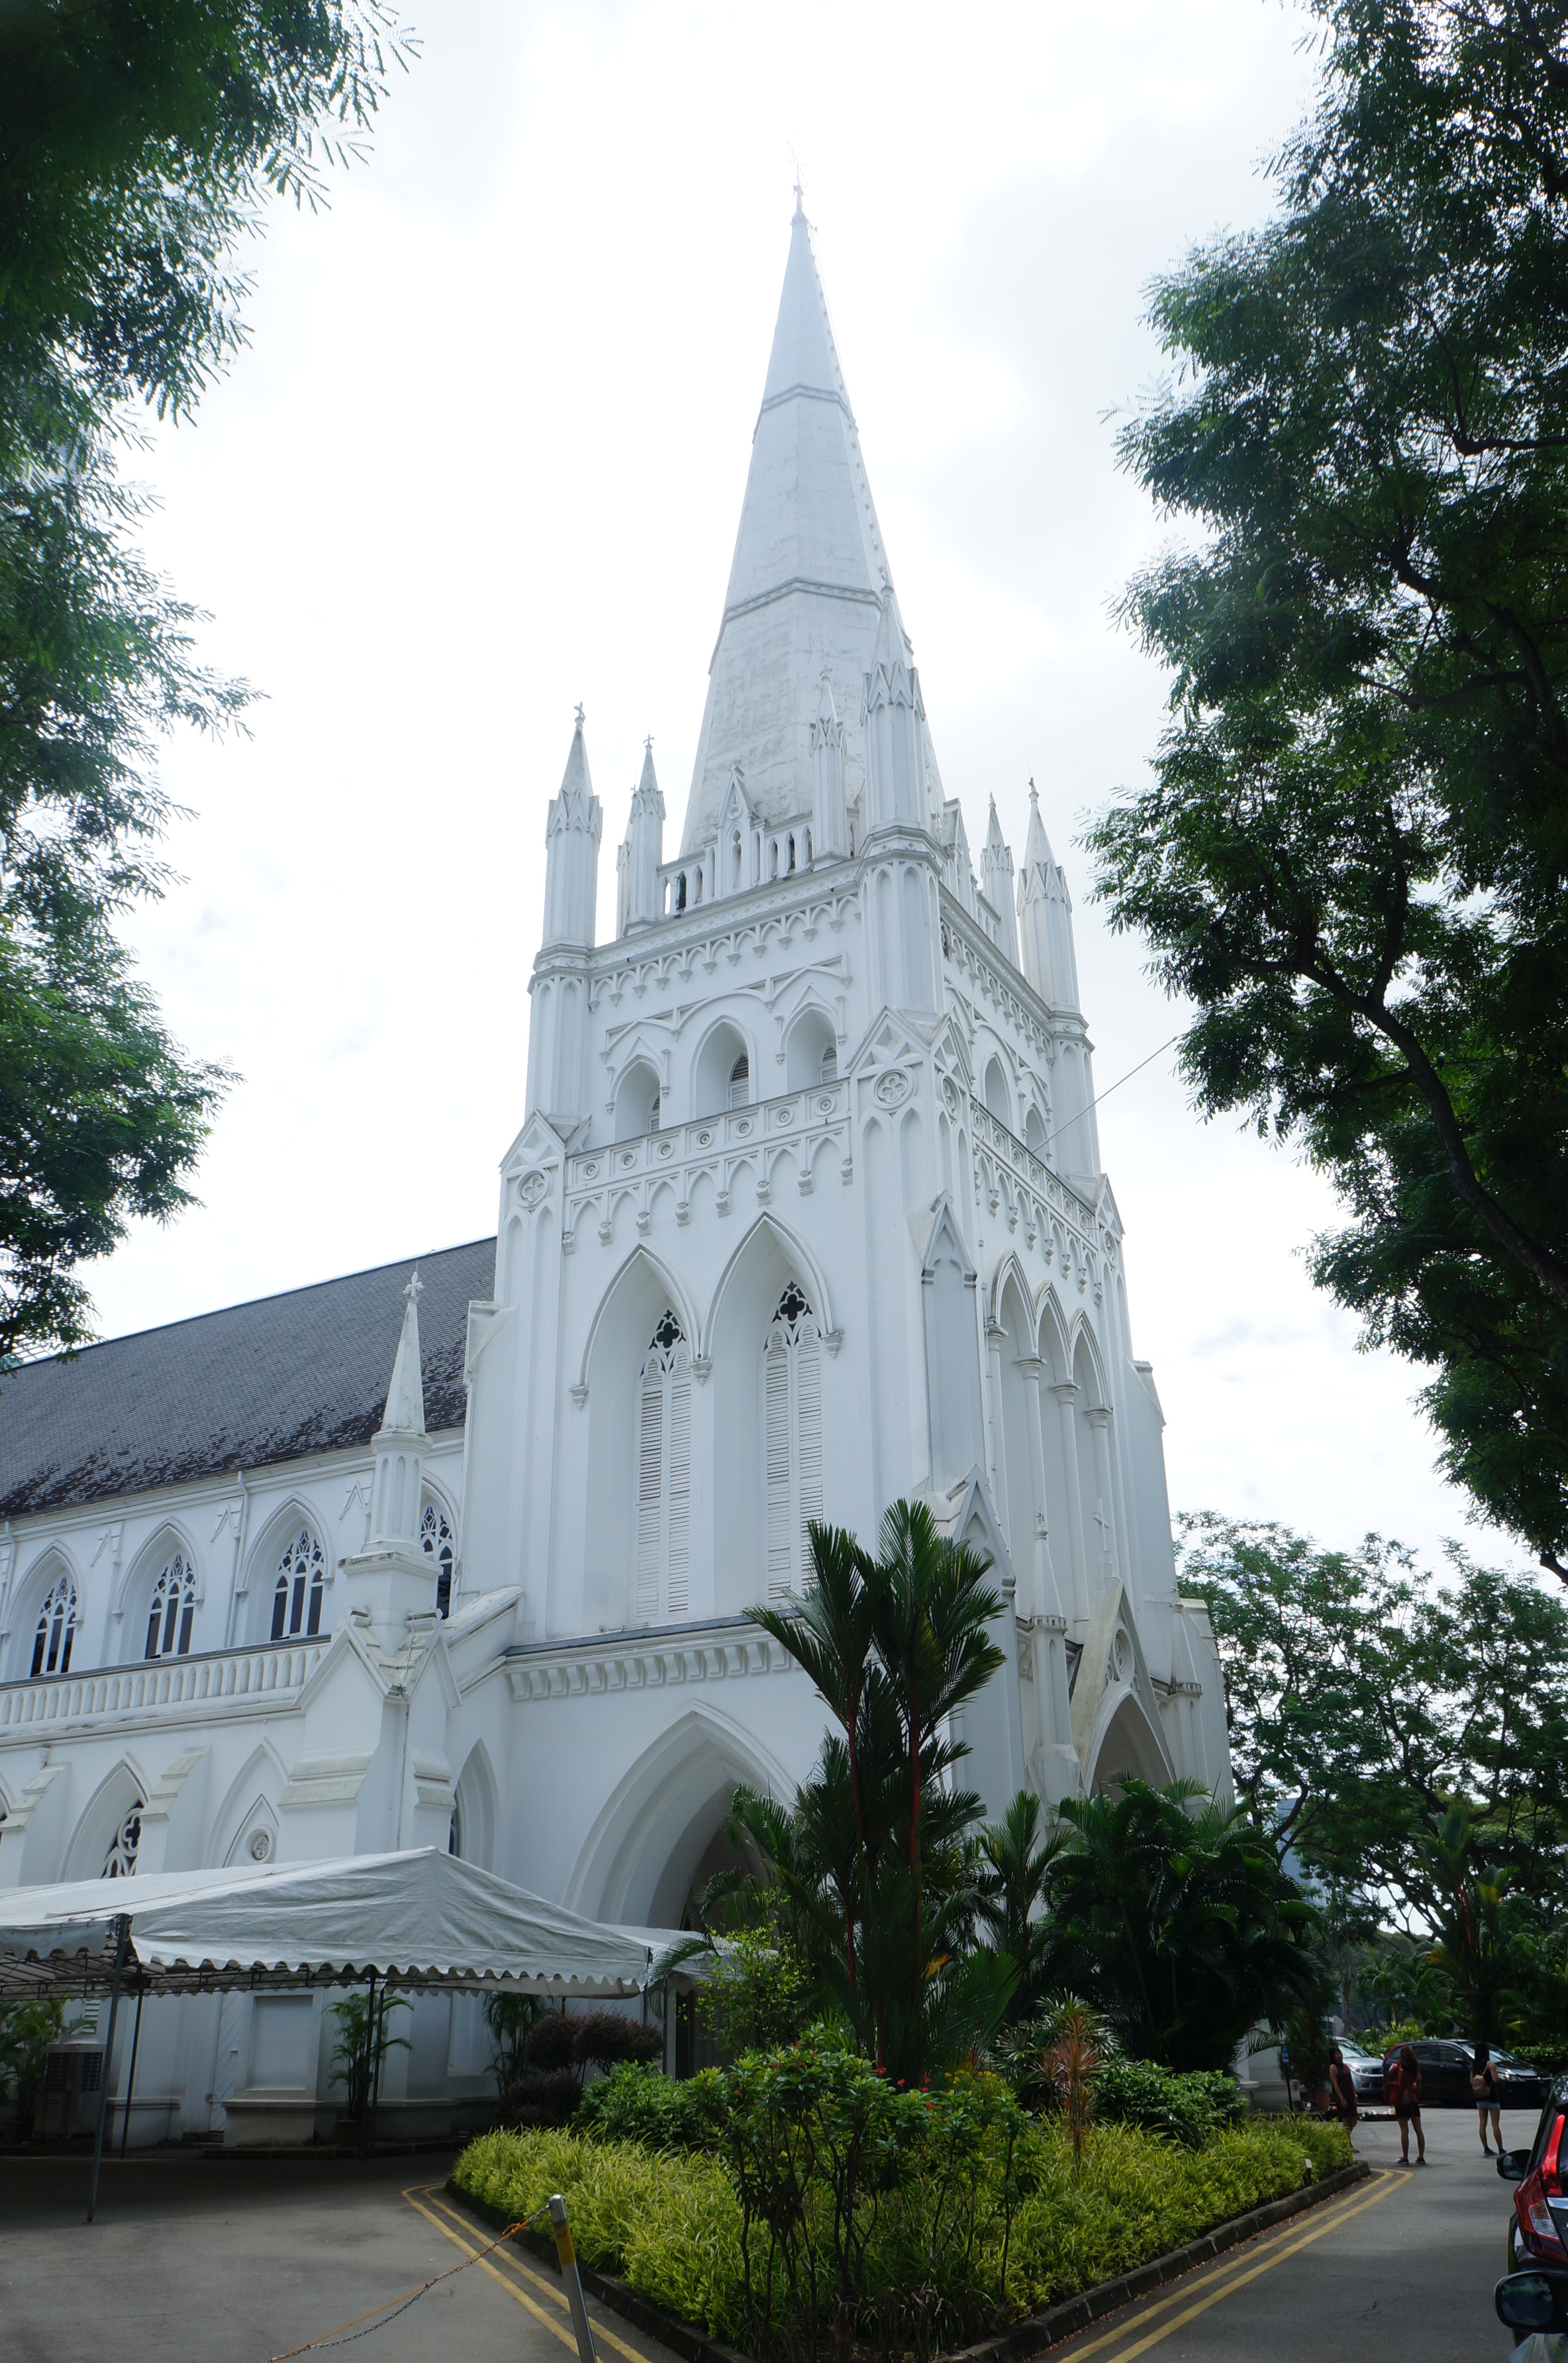 【携程攻略】新加坡圣安德烈教堂景点,在观赏完小印度区域主干道路旁